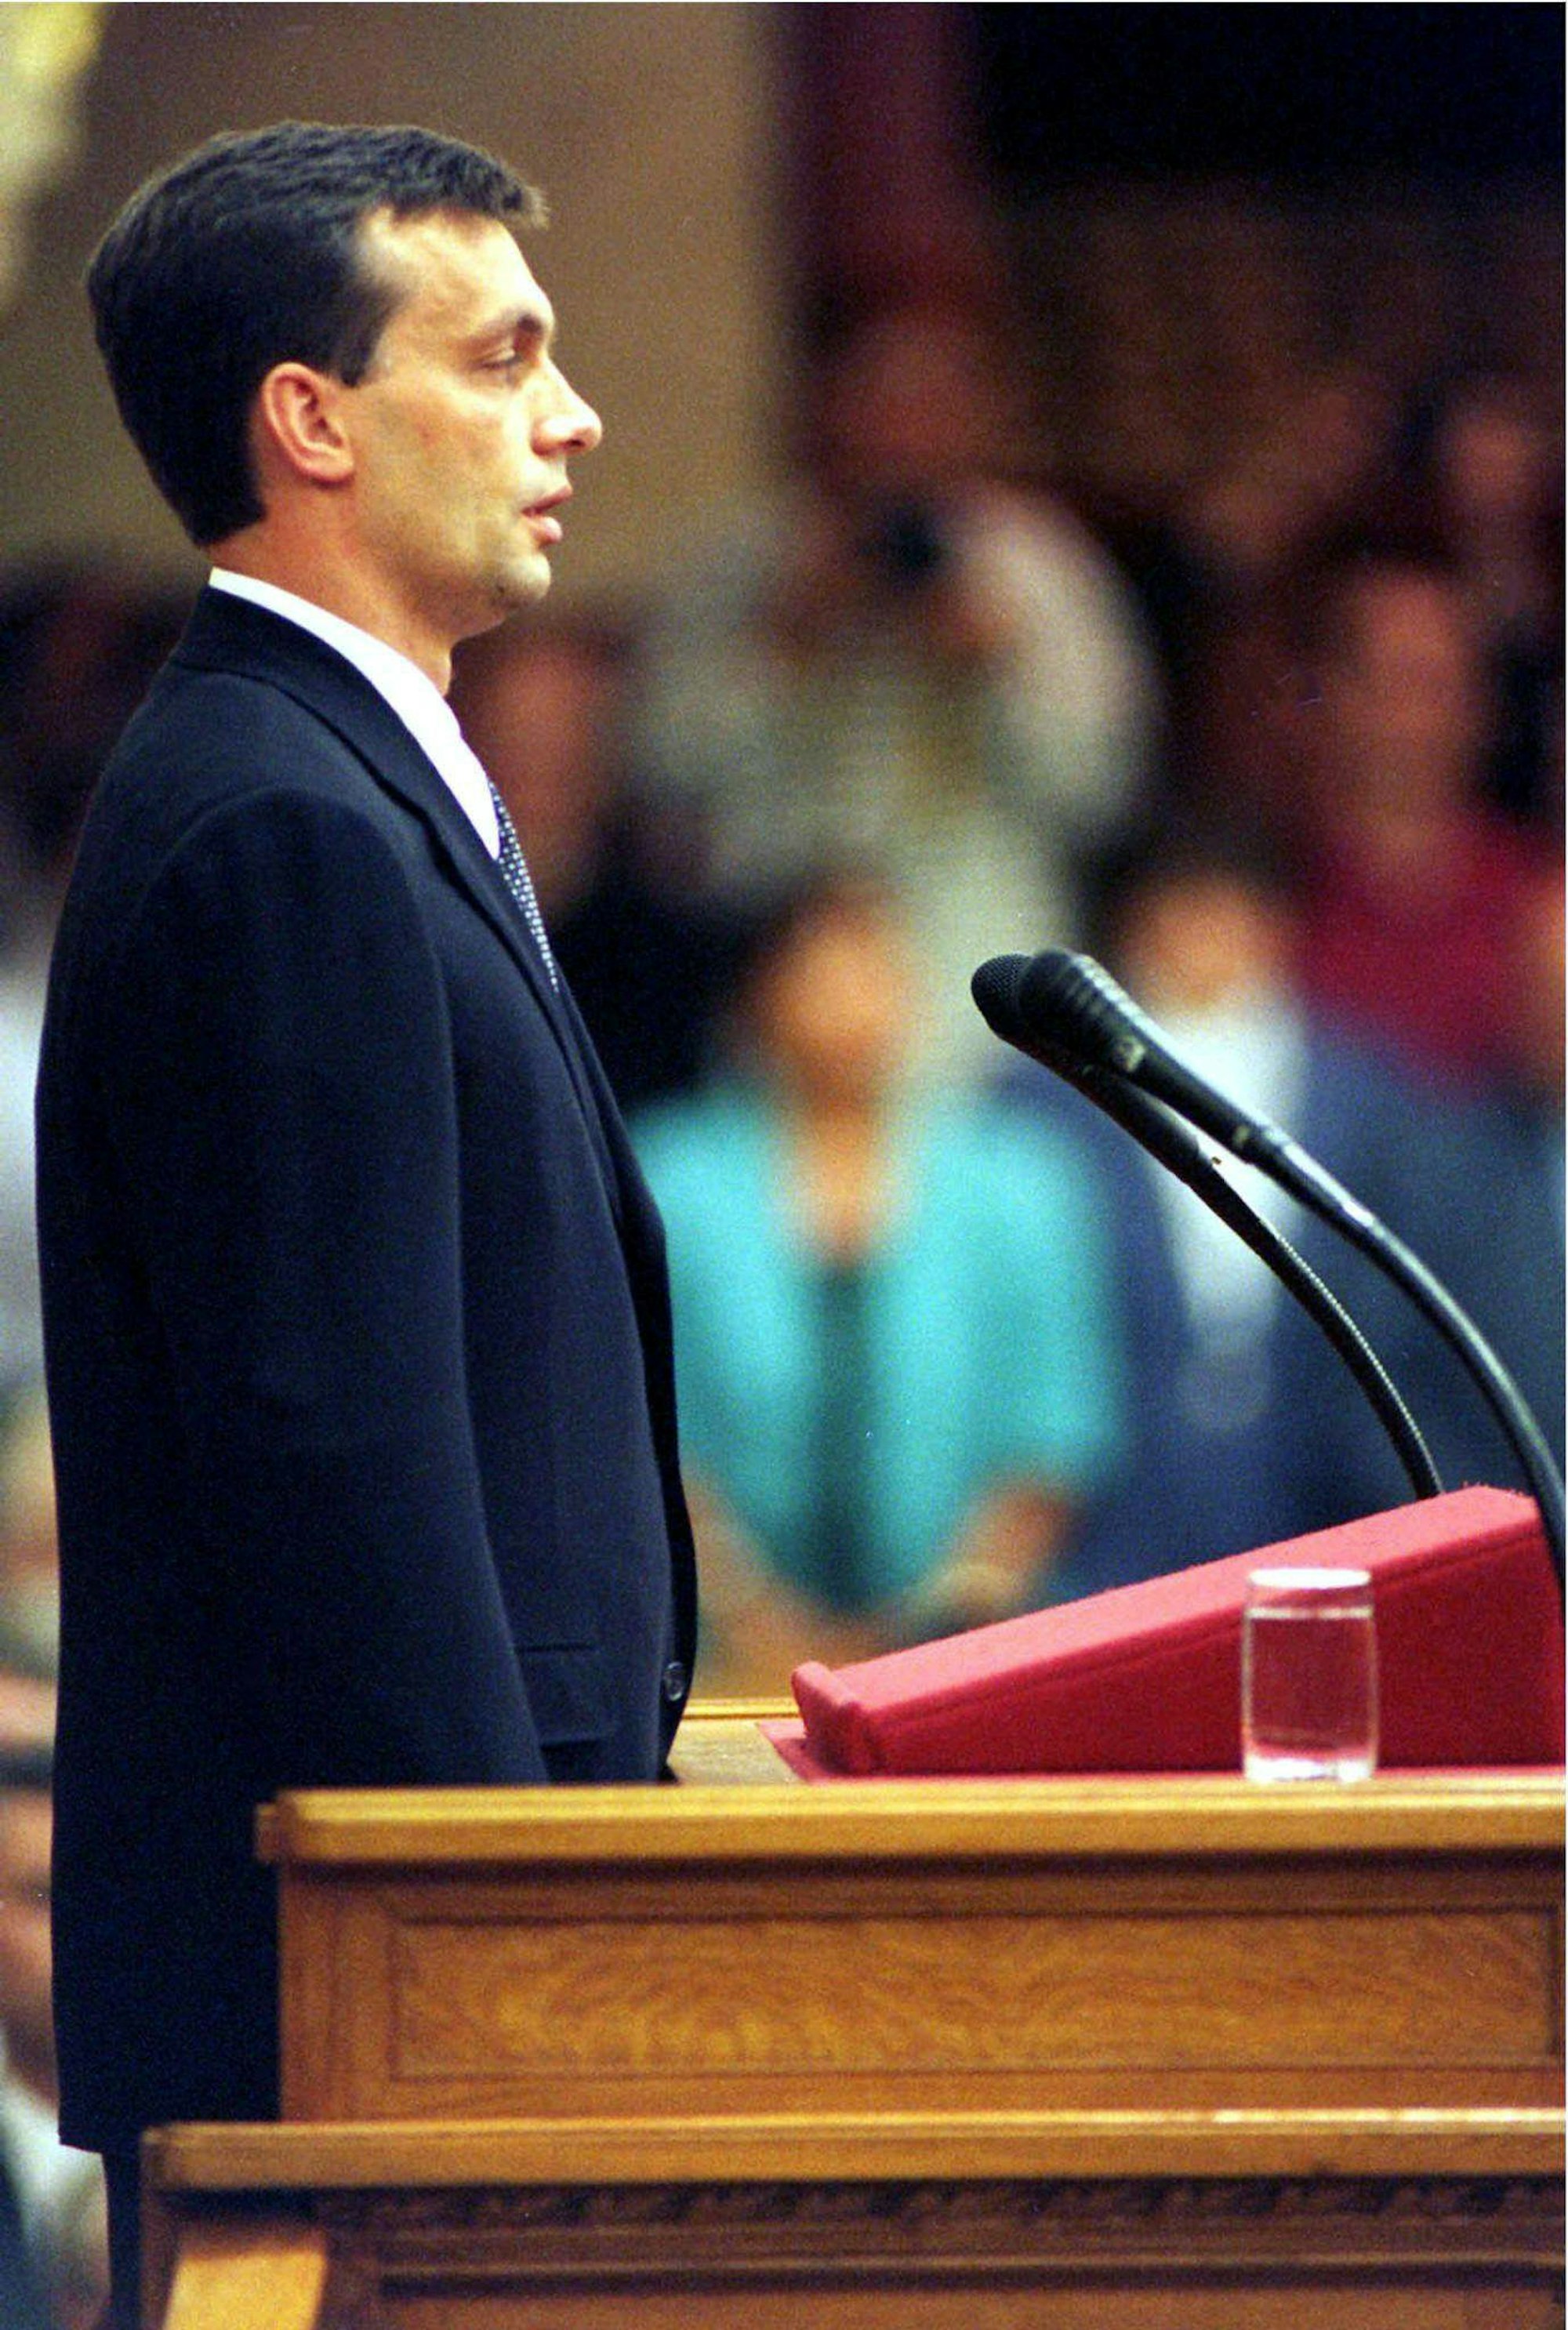 Der 6. Juni 1998 in Budapest: Viktor Orbán, neu gewählter Ministerpräsident und Vorsitzender der rechtsgerichteten Partei Fidesz, legt im ungarischen Parlament den Amtseid ab.